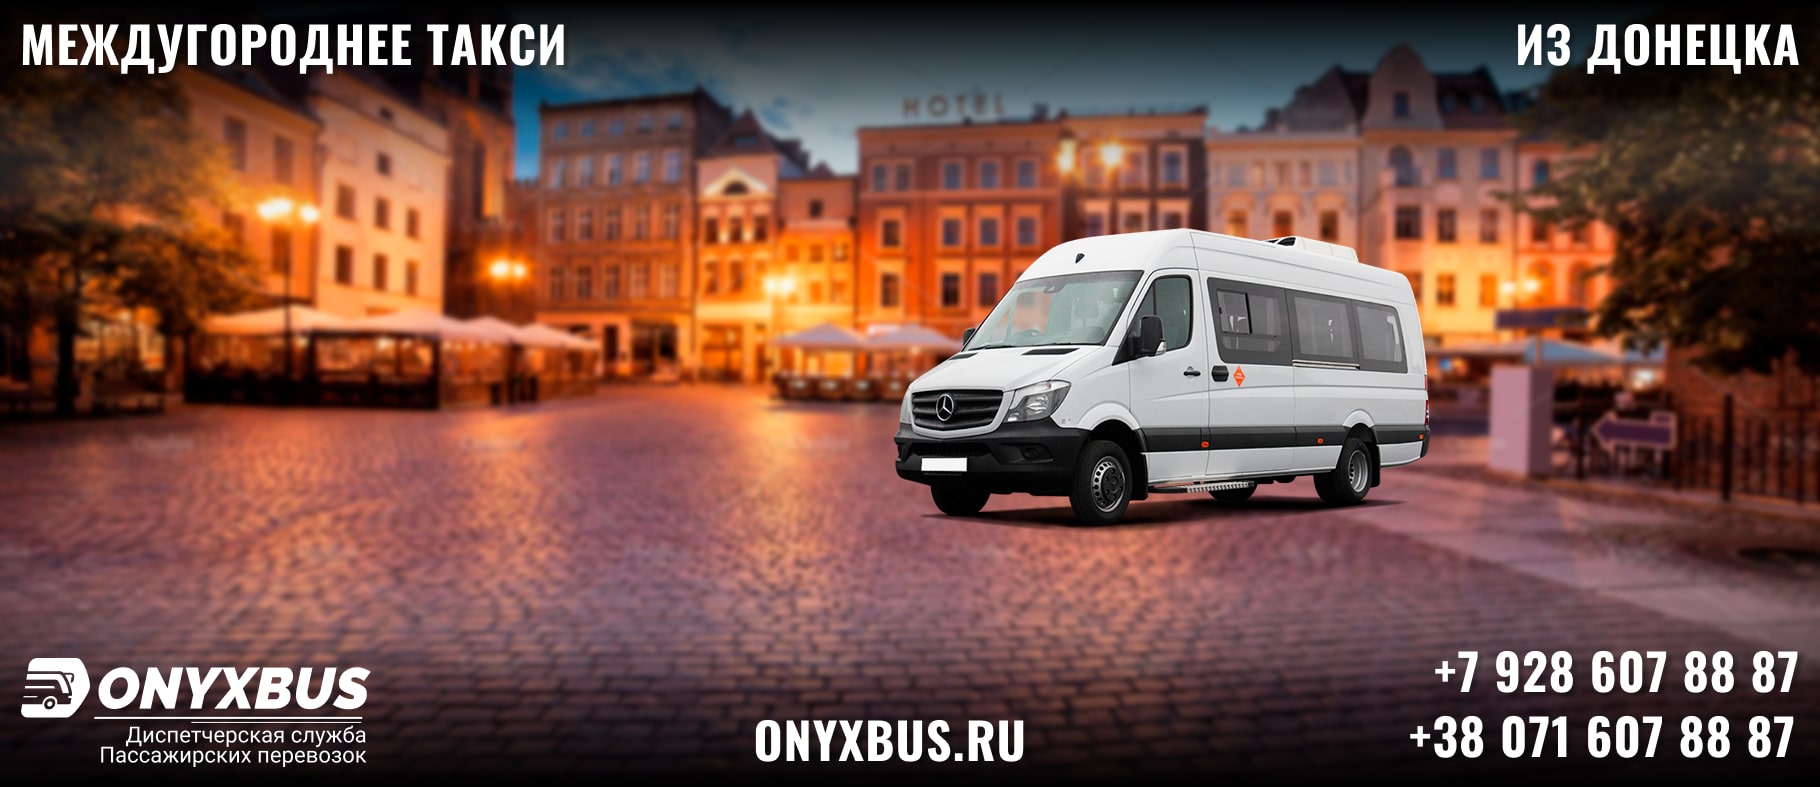 Заказ <br>Микроавтобуса Донецк - Рыбачье